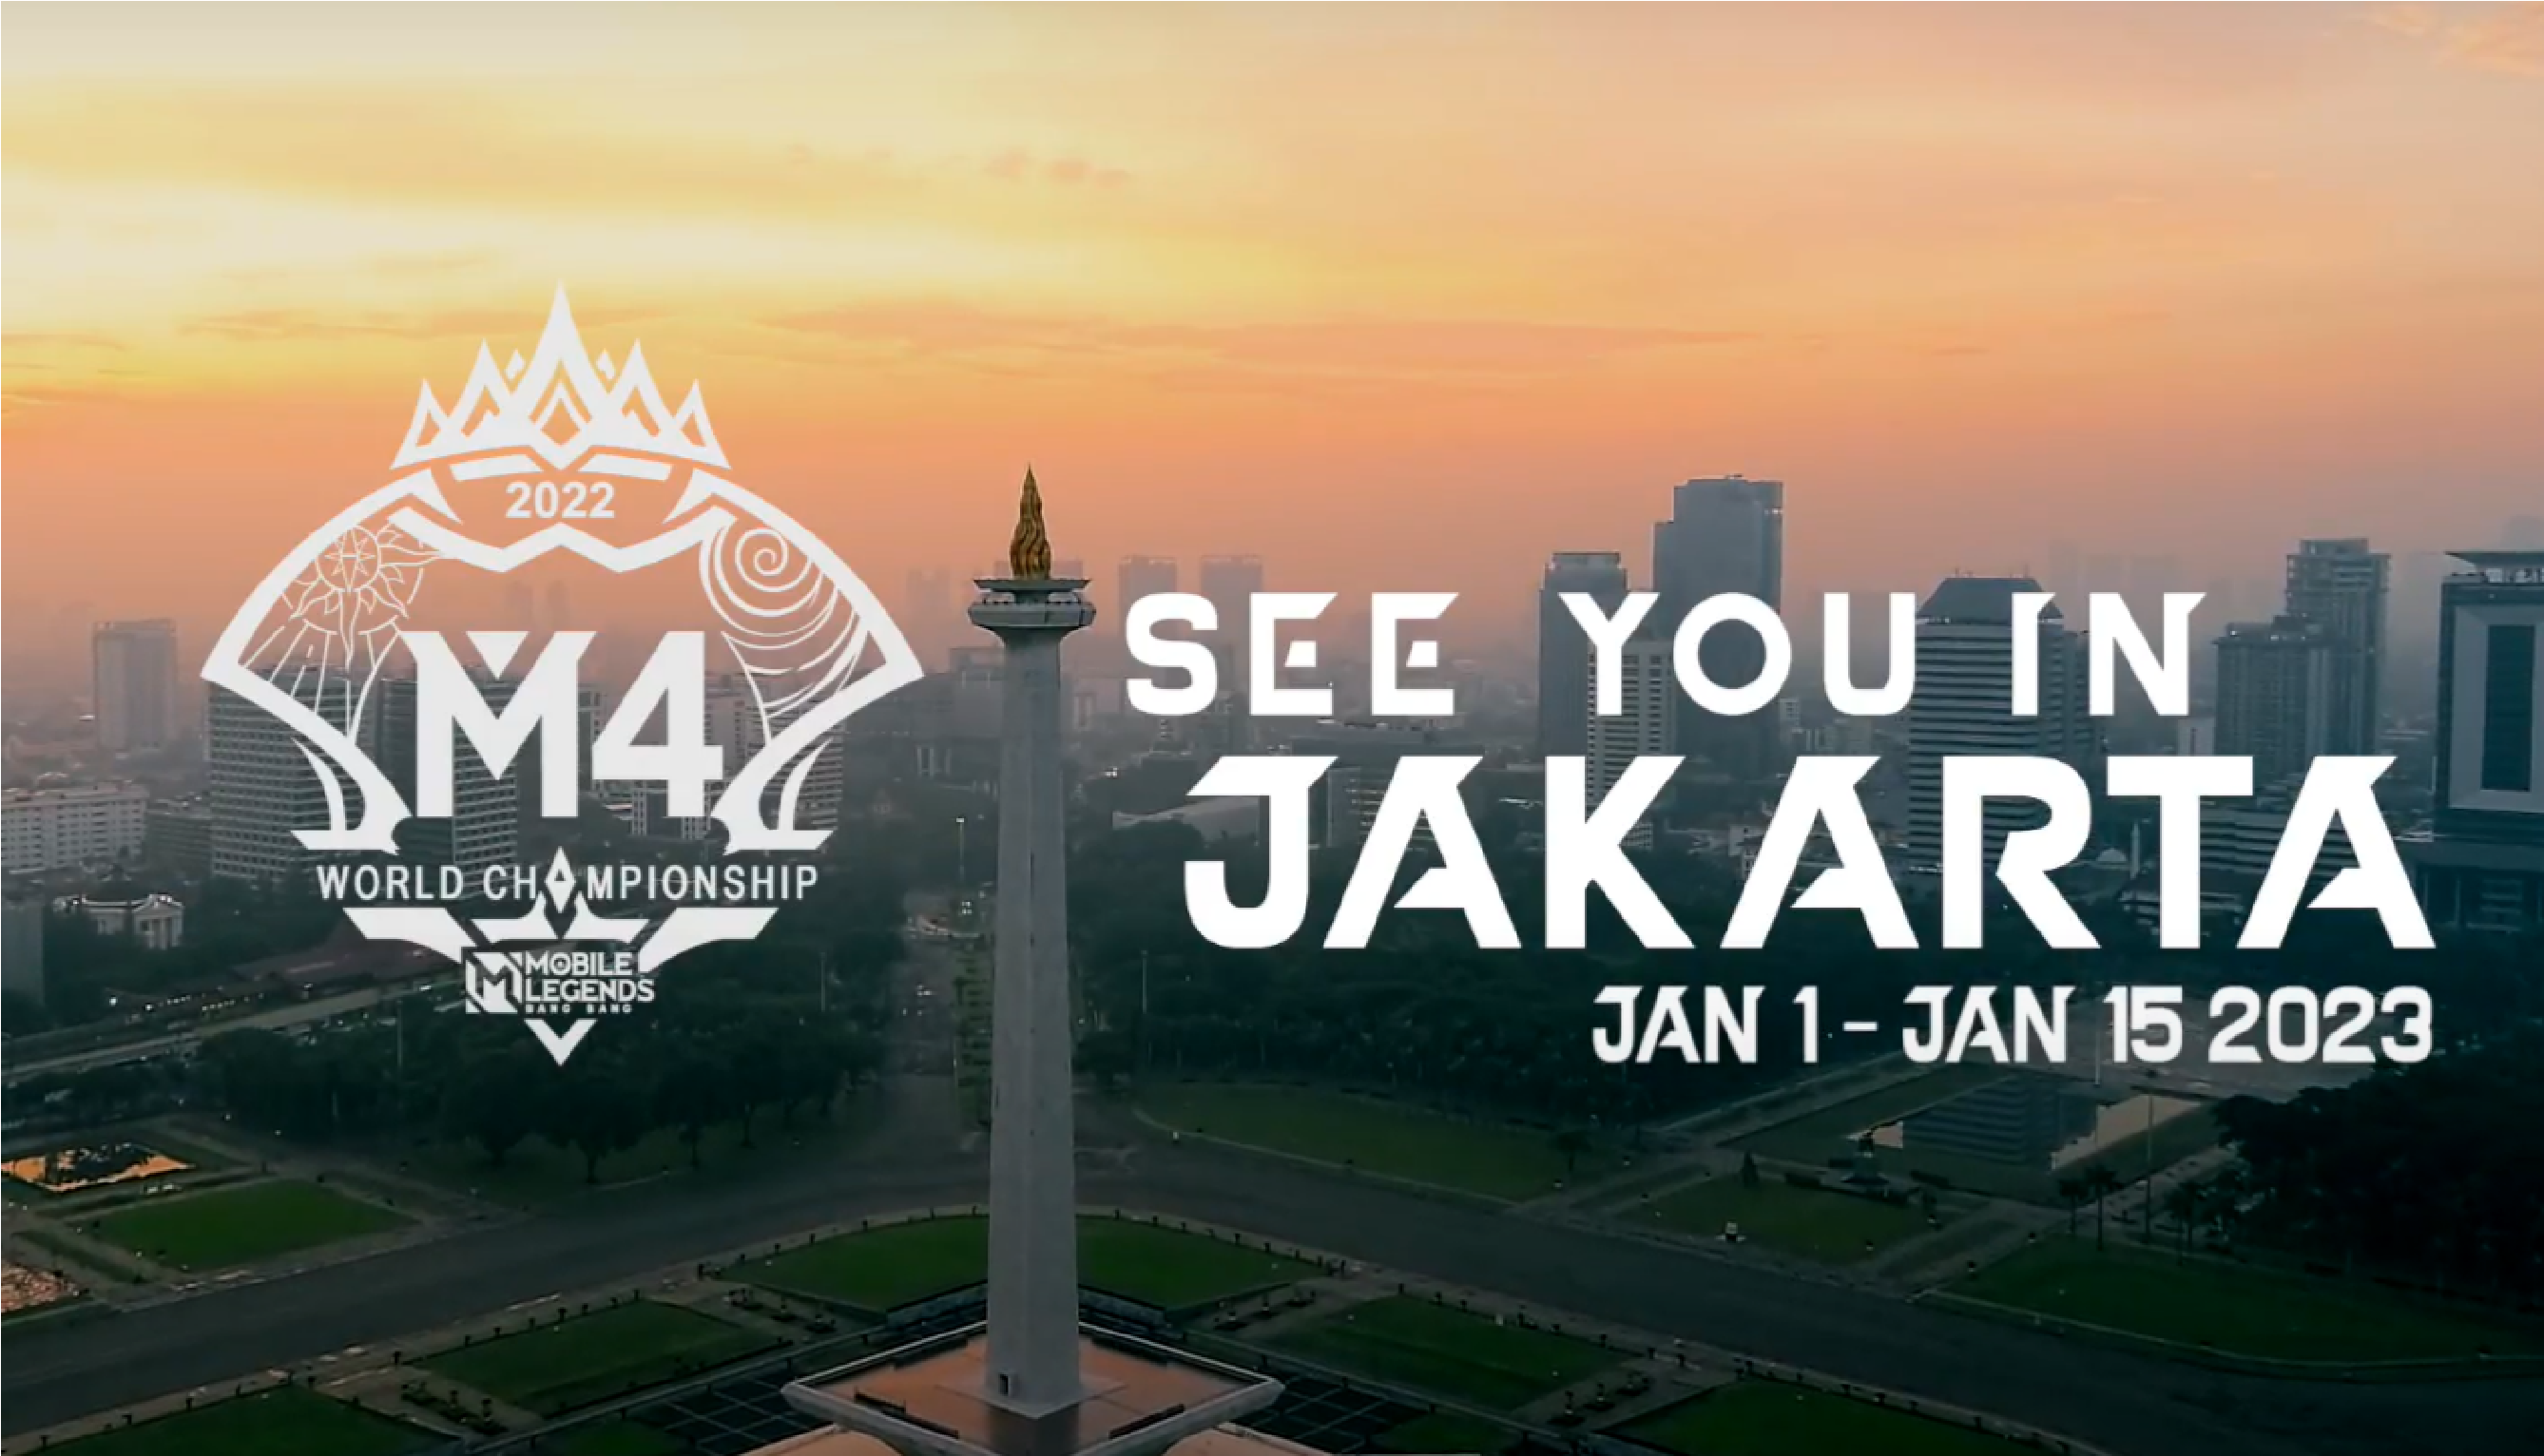 Sudah Resmi! M4 Mobile Legends Bakal Di Laksanakan Di Jakarta, Kalian Sudah Tau?